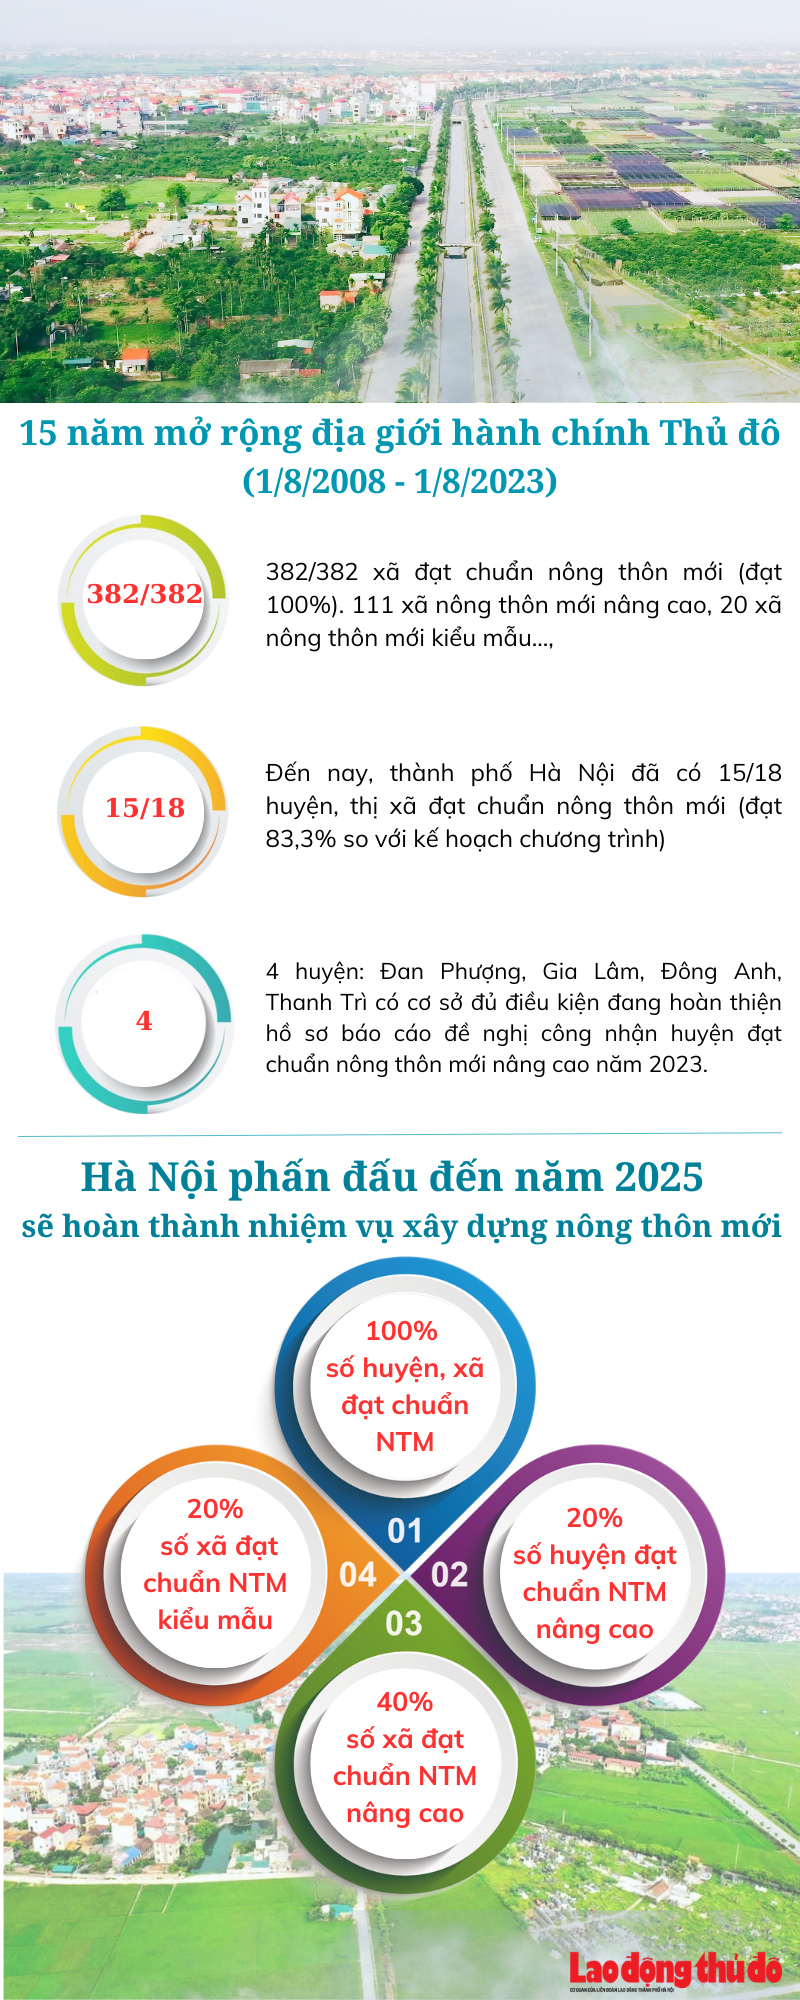 Nông thôn mới Hà Nội sau 15 năm mở rộng địa giới hành chính